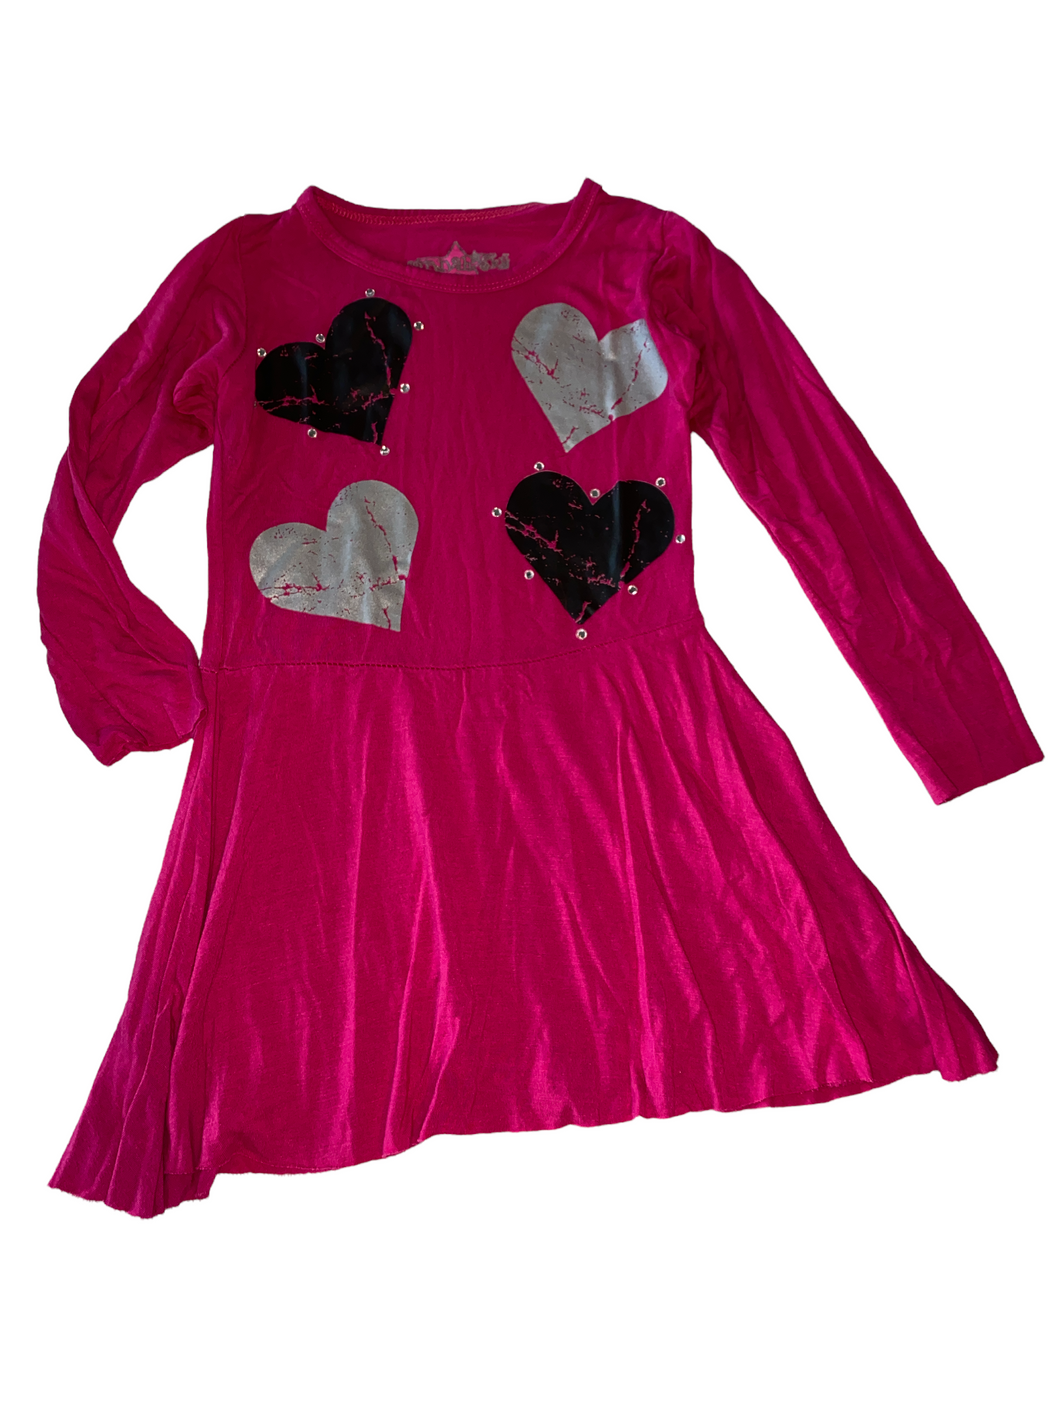 Hannah Sky toddler girls long sleeve distressed heart skater dress 4T